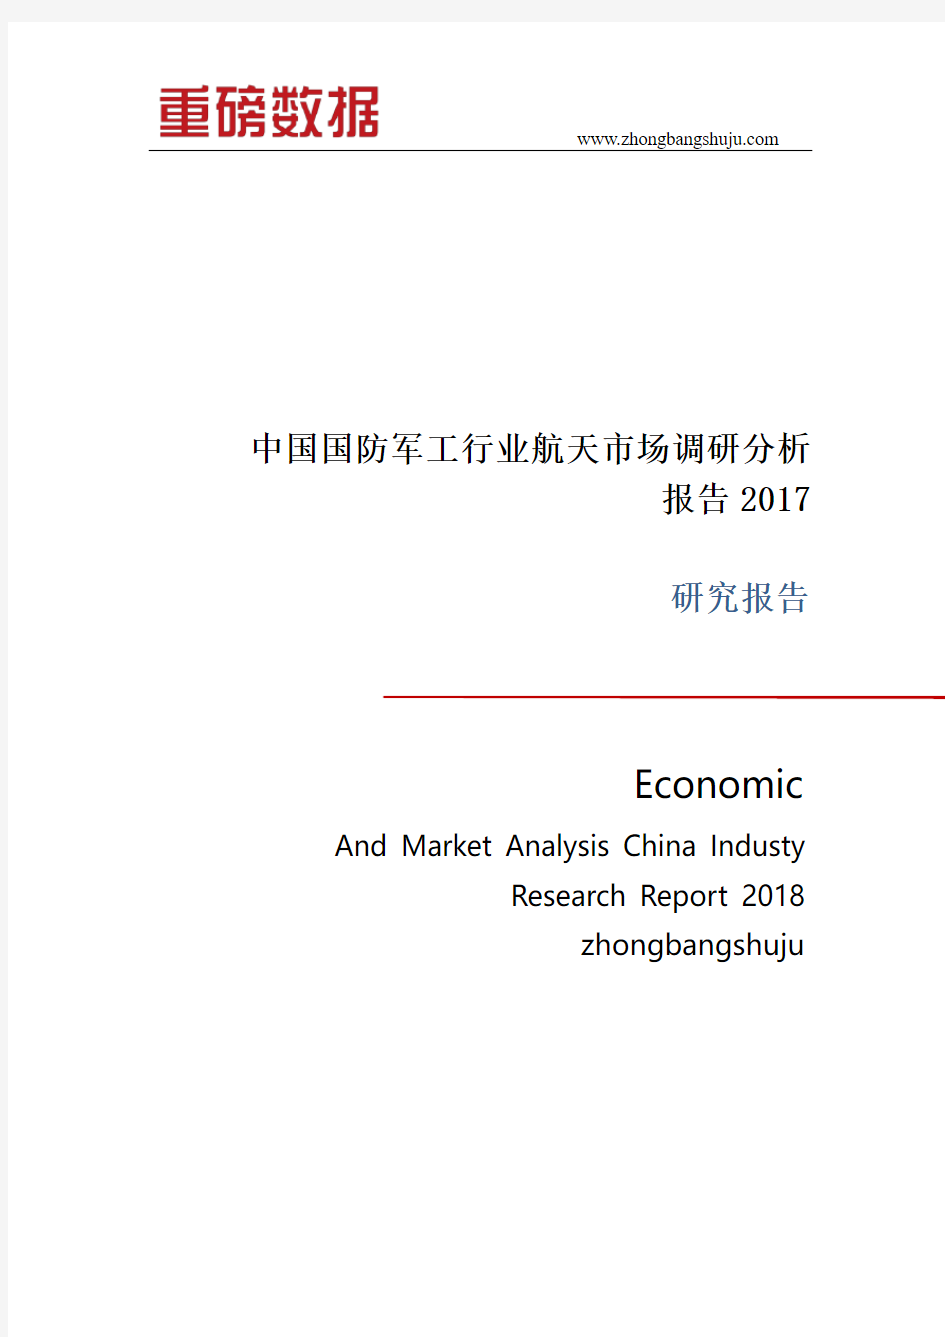 中国国防军工行业航天市场调研分析报告2017-2018